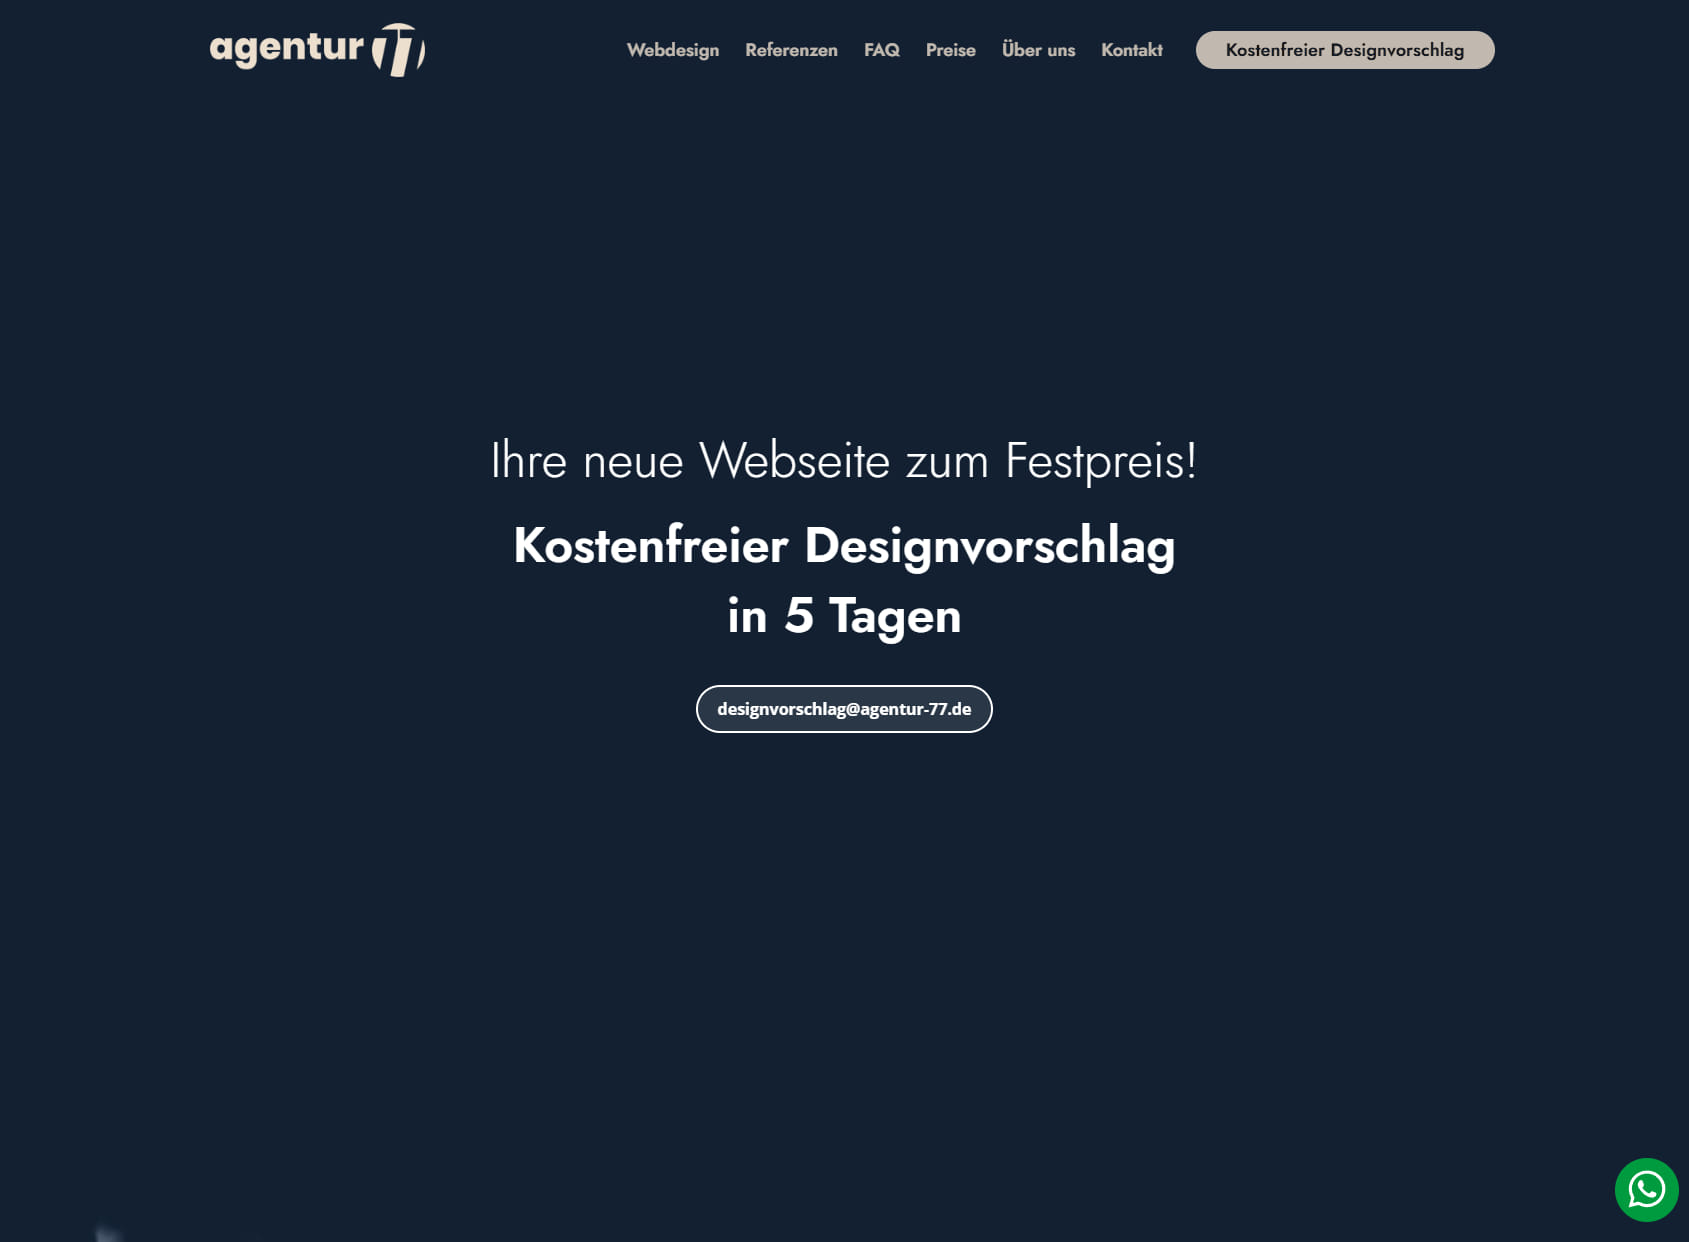 Webdesign Agentur77